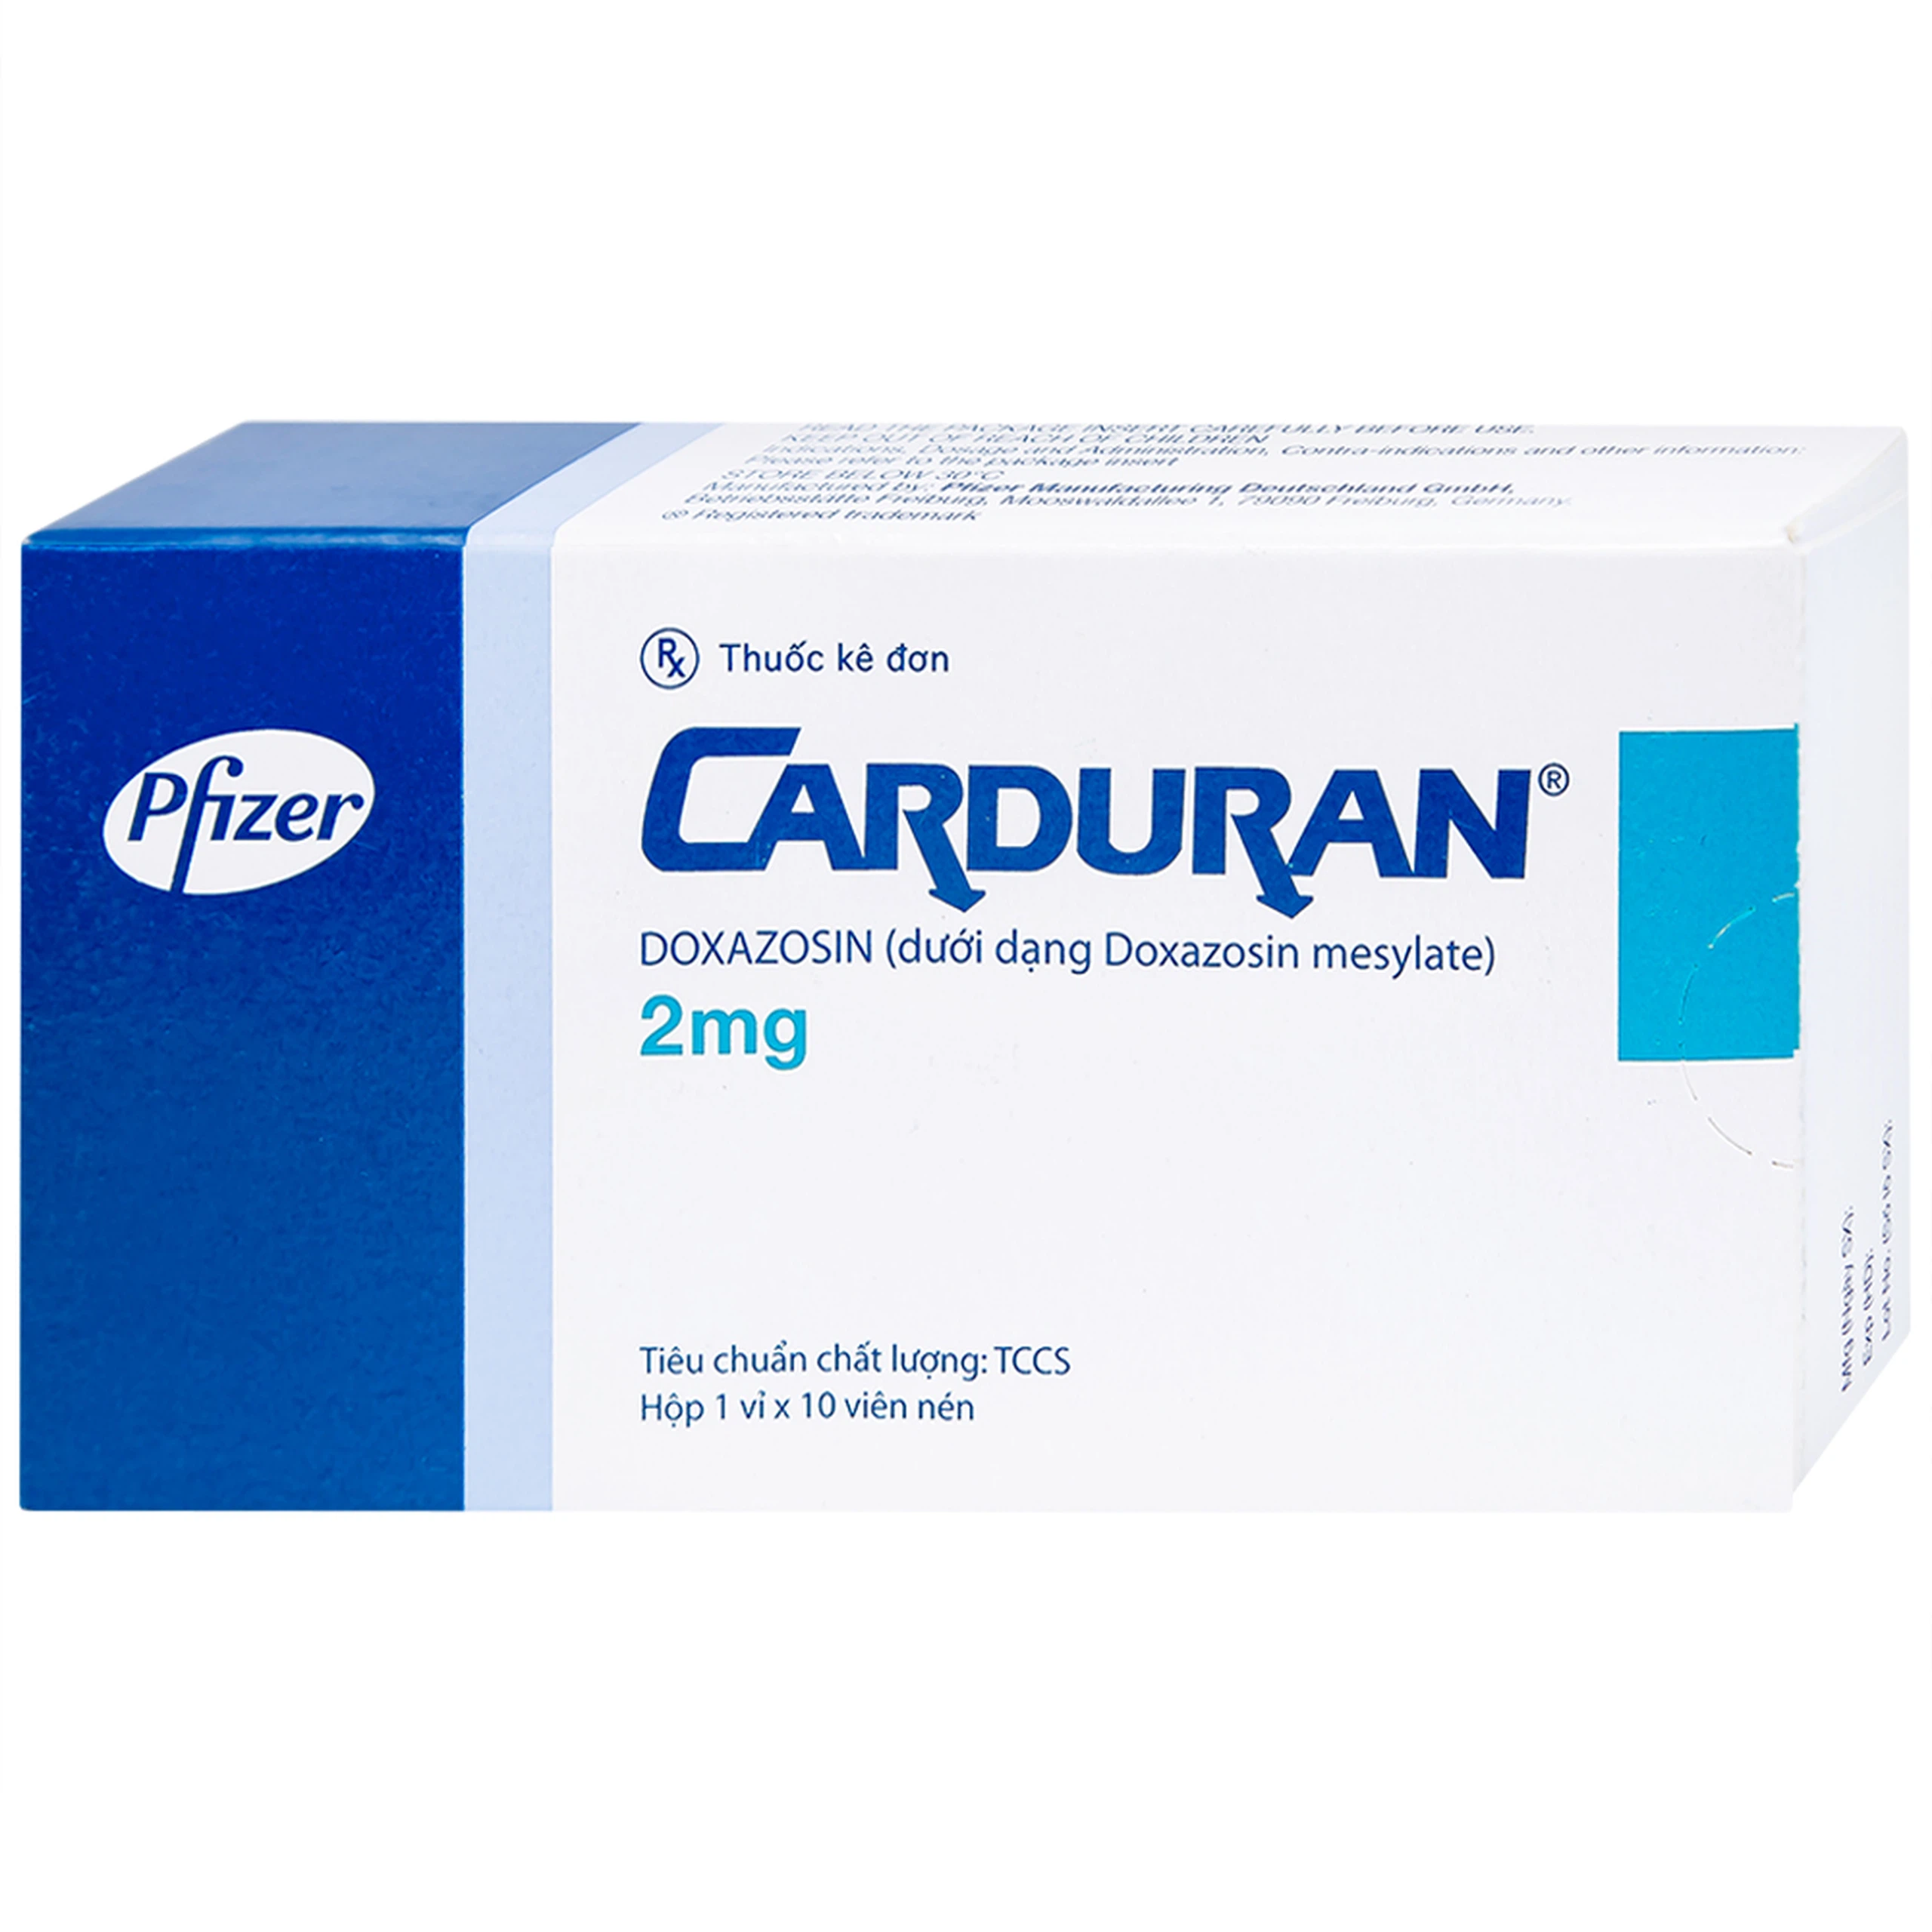 Thuốc Carduran 2mg Pfizer điều trị tăng huyết áp, u xơ tiền liệt tuyến (1 vỉ x 10 viên)